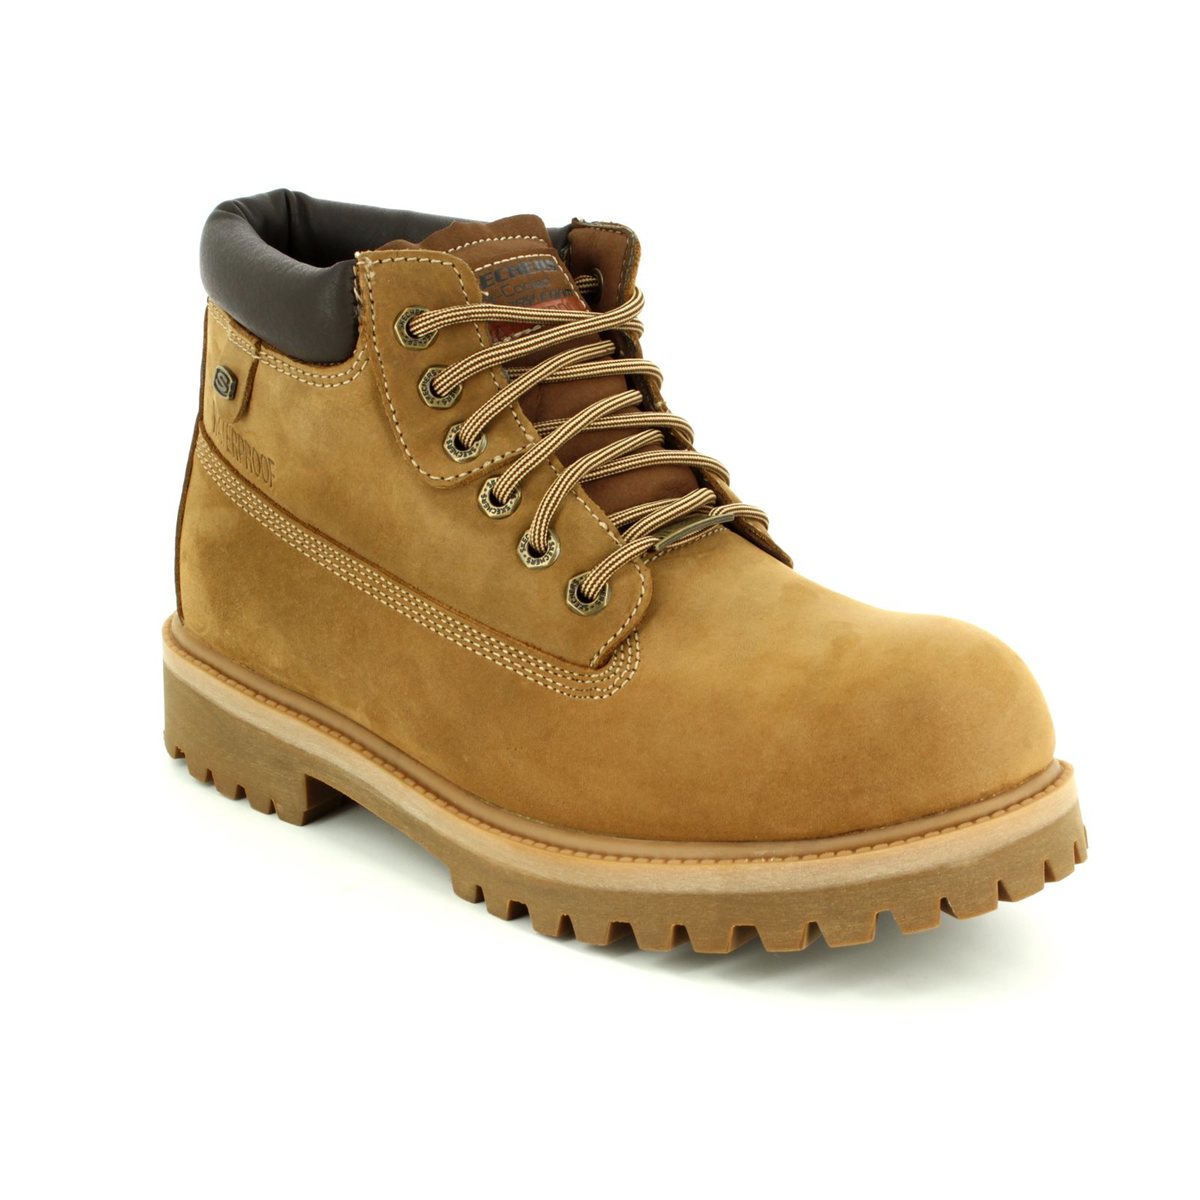 brown sketcher boots